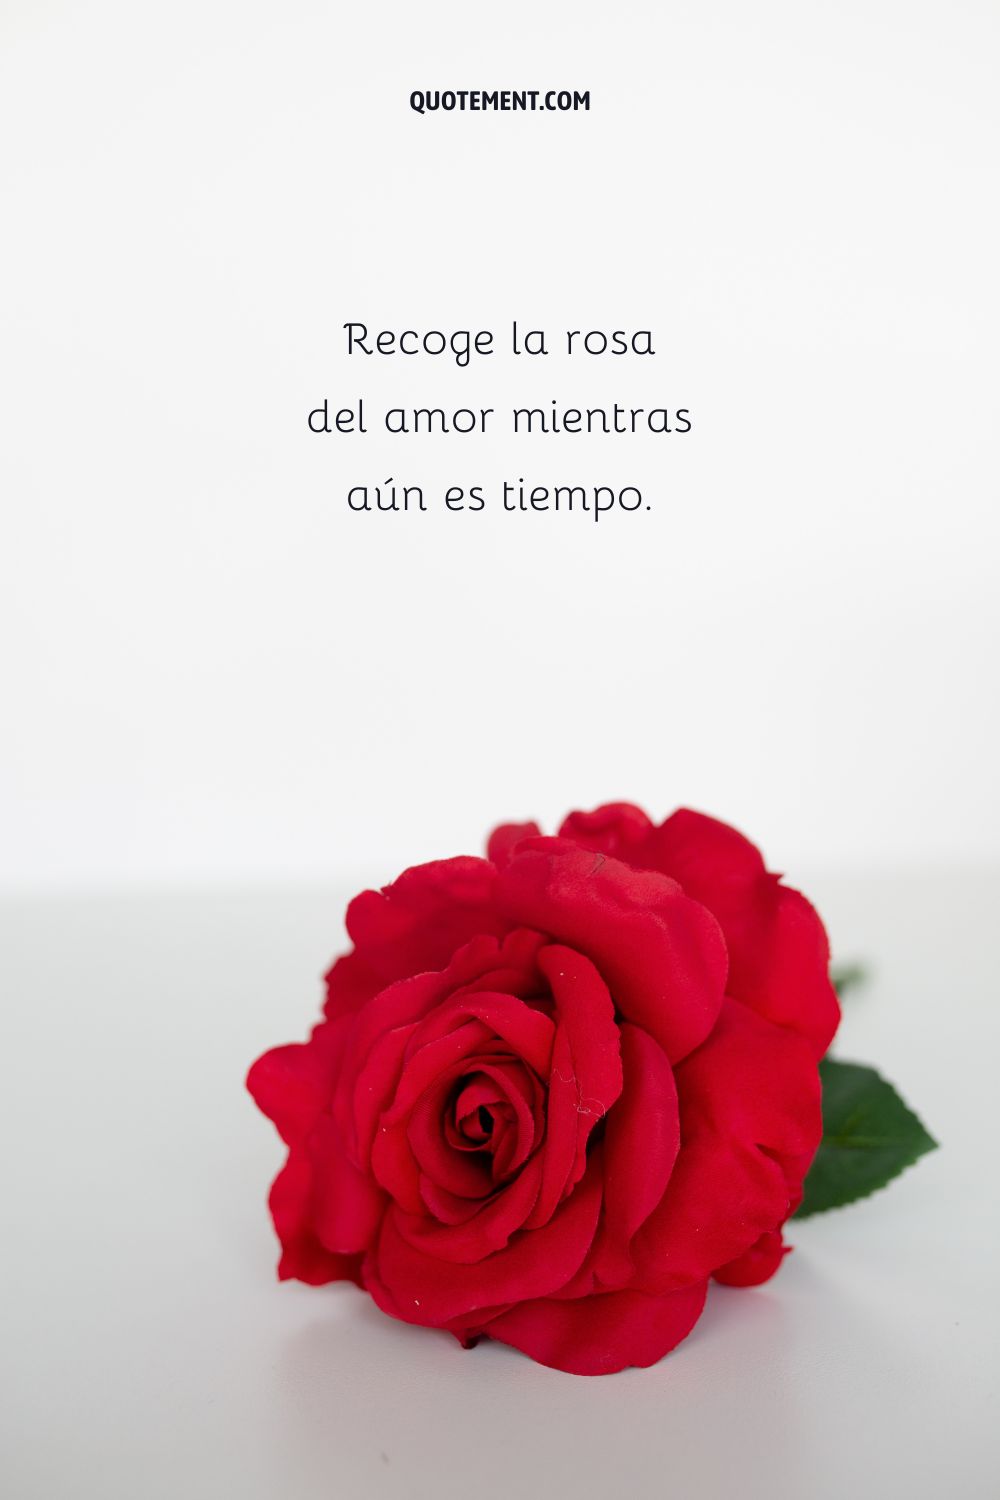 Recoge la rosa del amor mientras aún es tiempo.